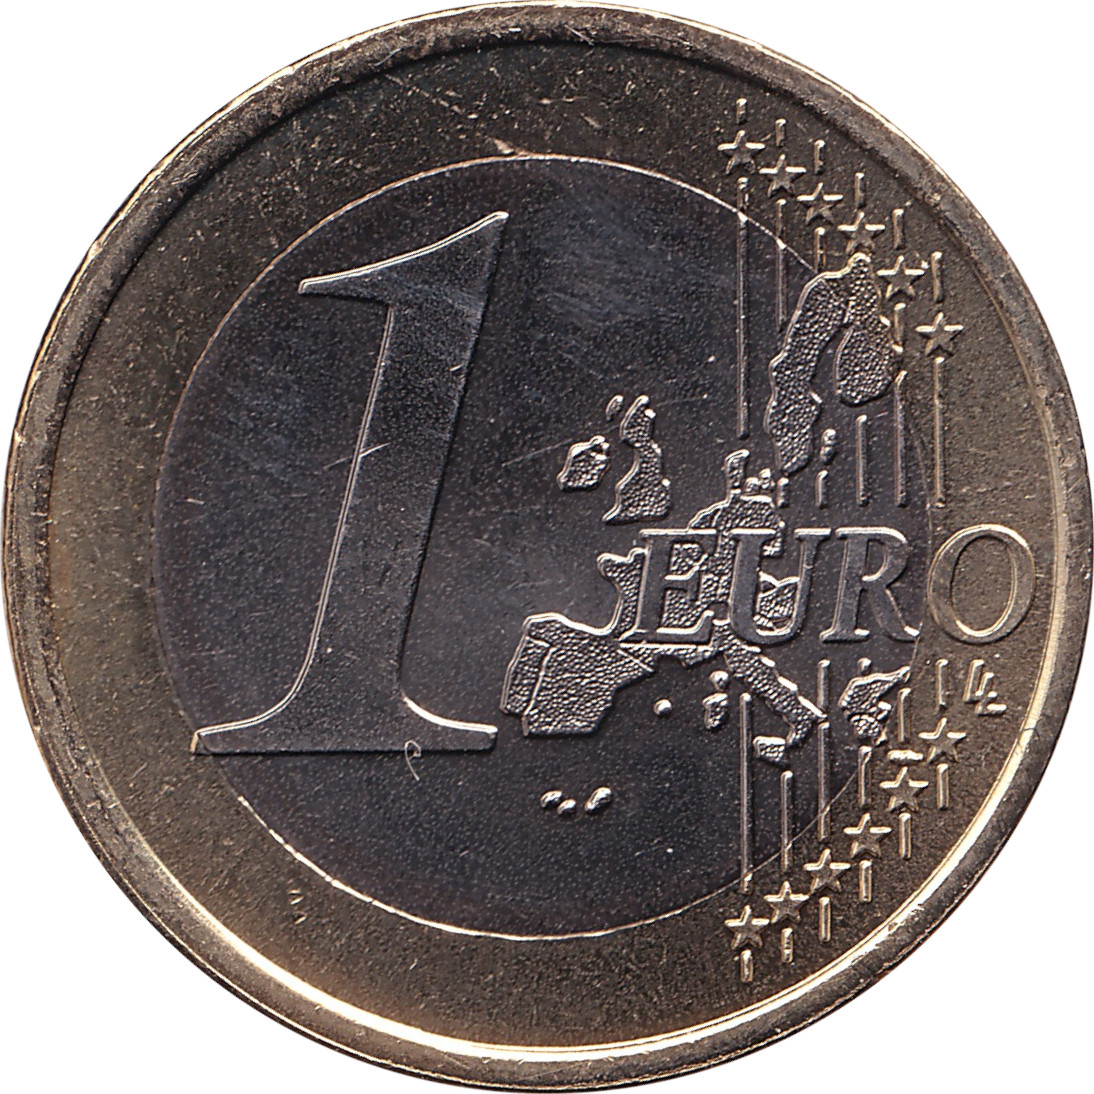 1 euro - Arbre